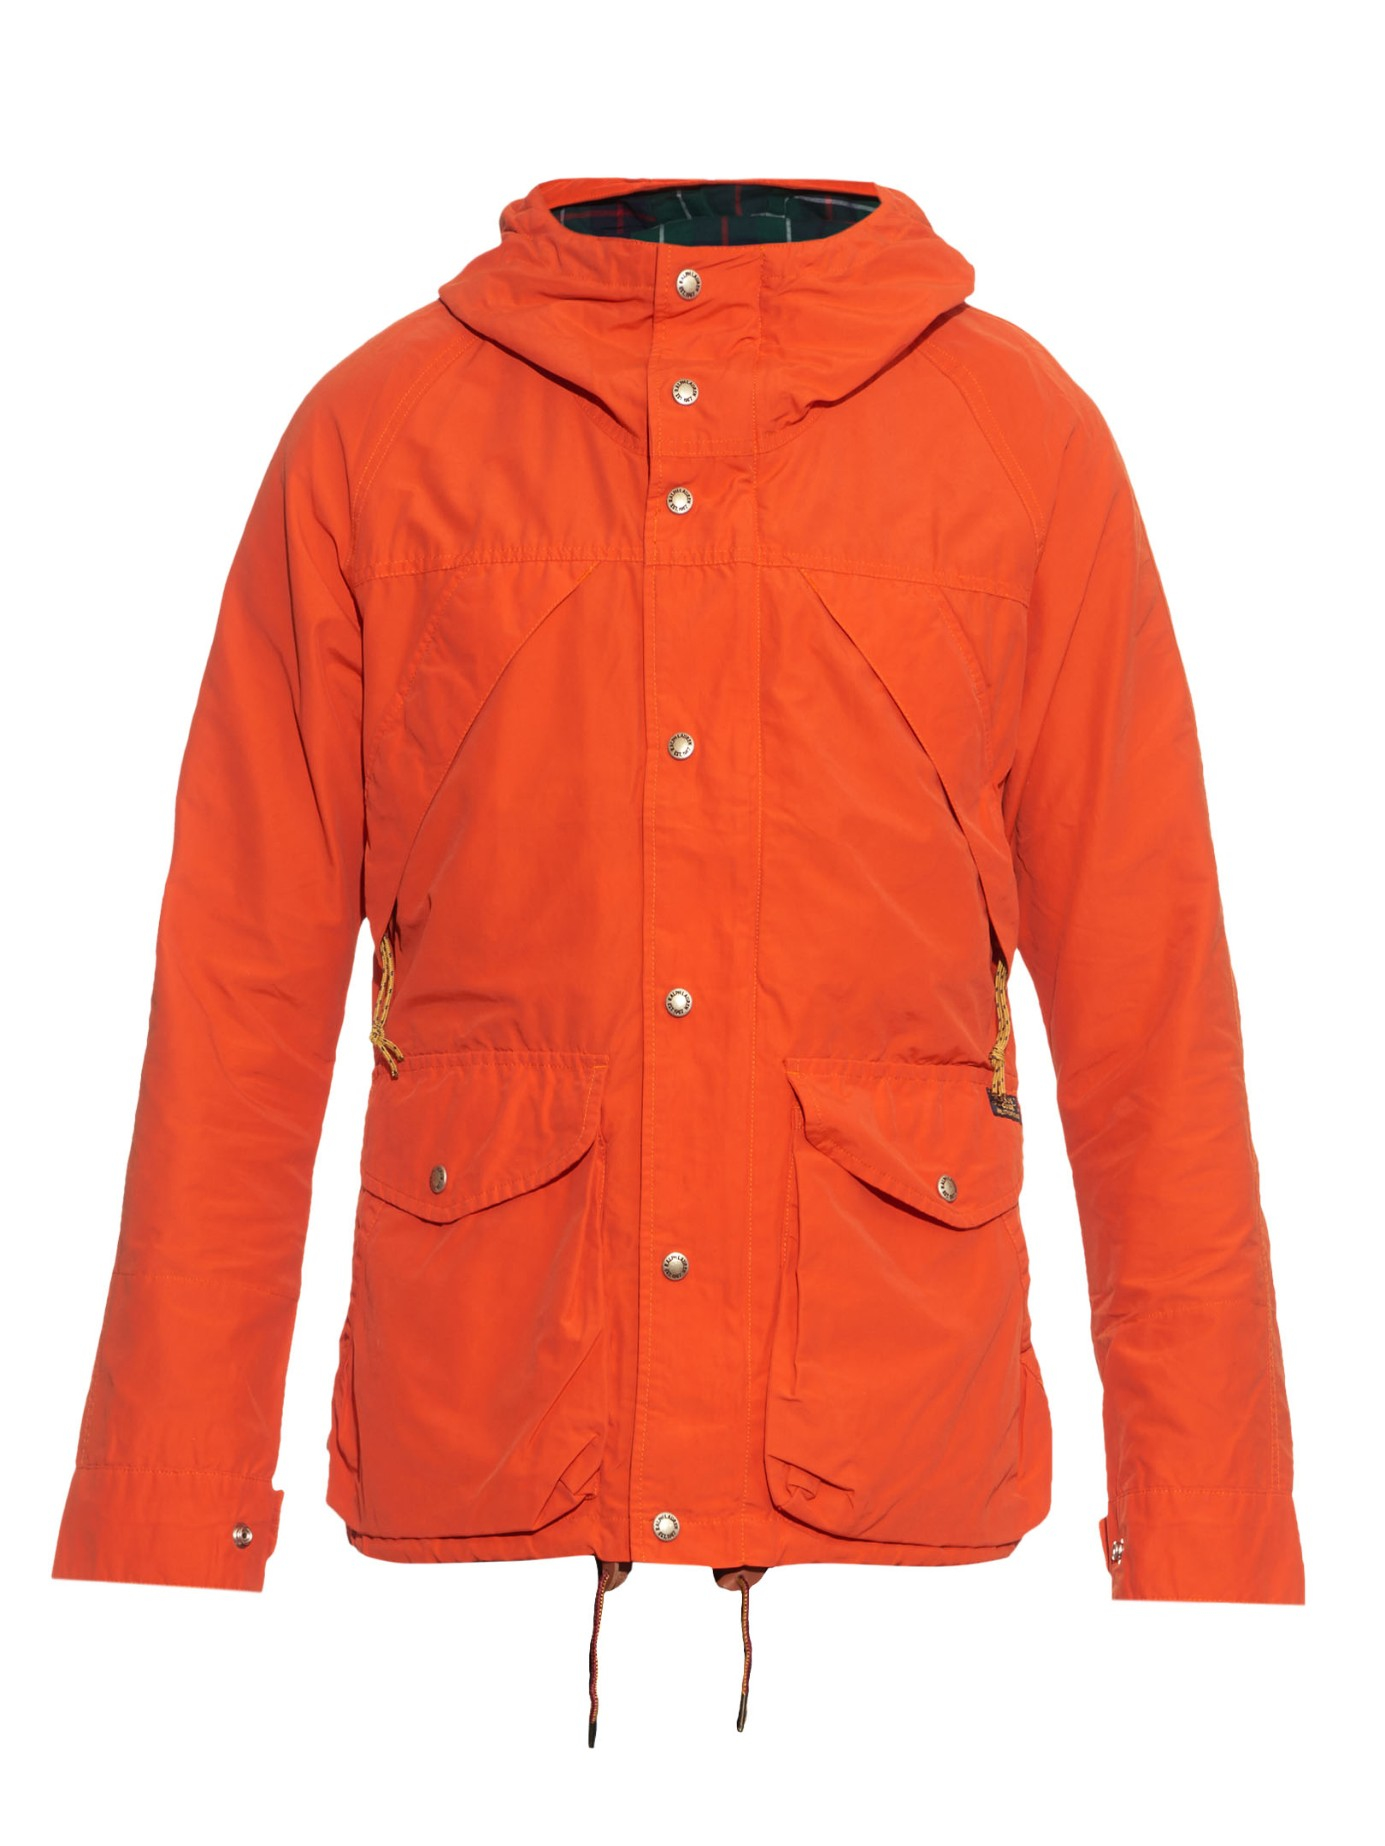 Lyst - Polo Ralph Lauren Trekking Basecamp Anorak Jacket in Orange for Men